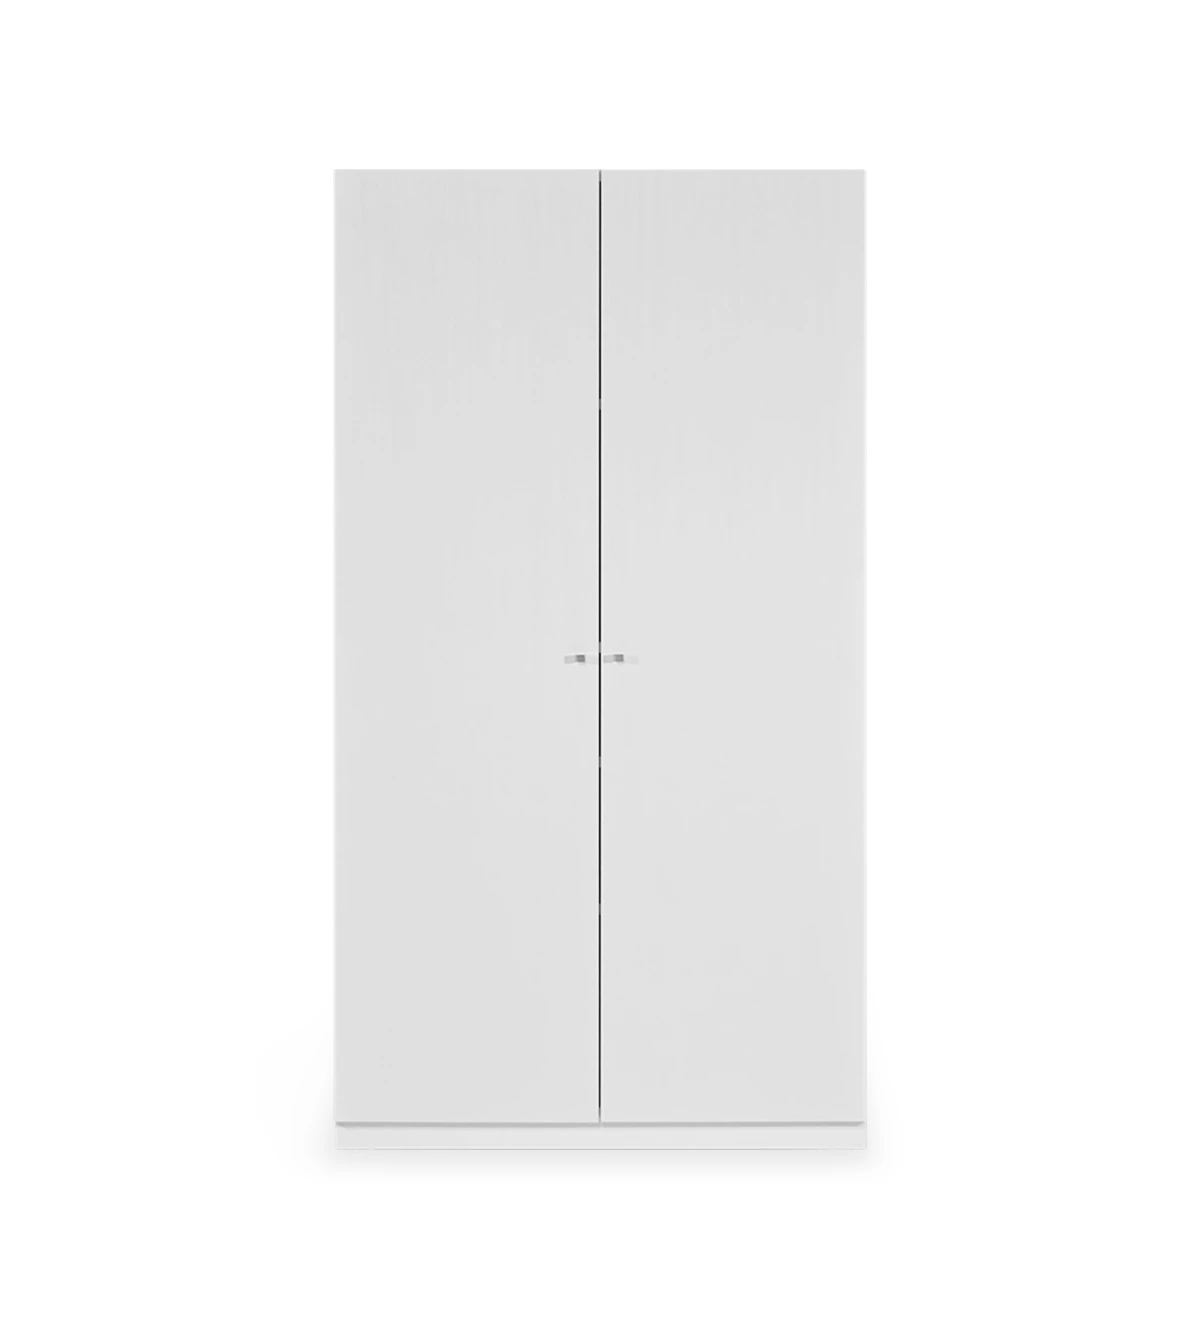 Móvel estante baixo em carvalho branco, com 2 porta e prateleiras amovíveis.